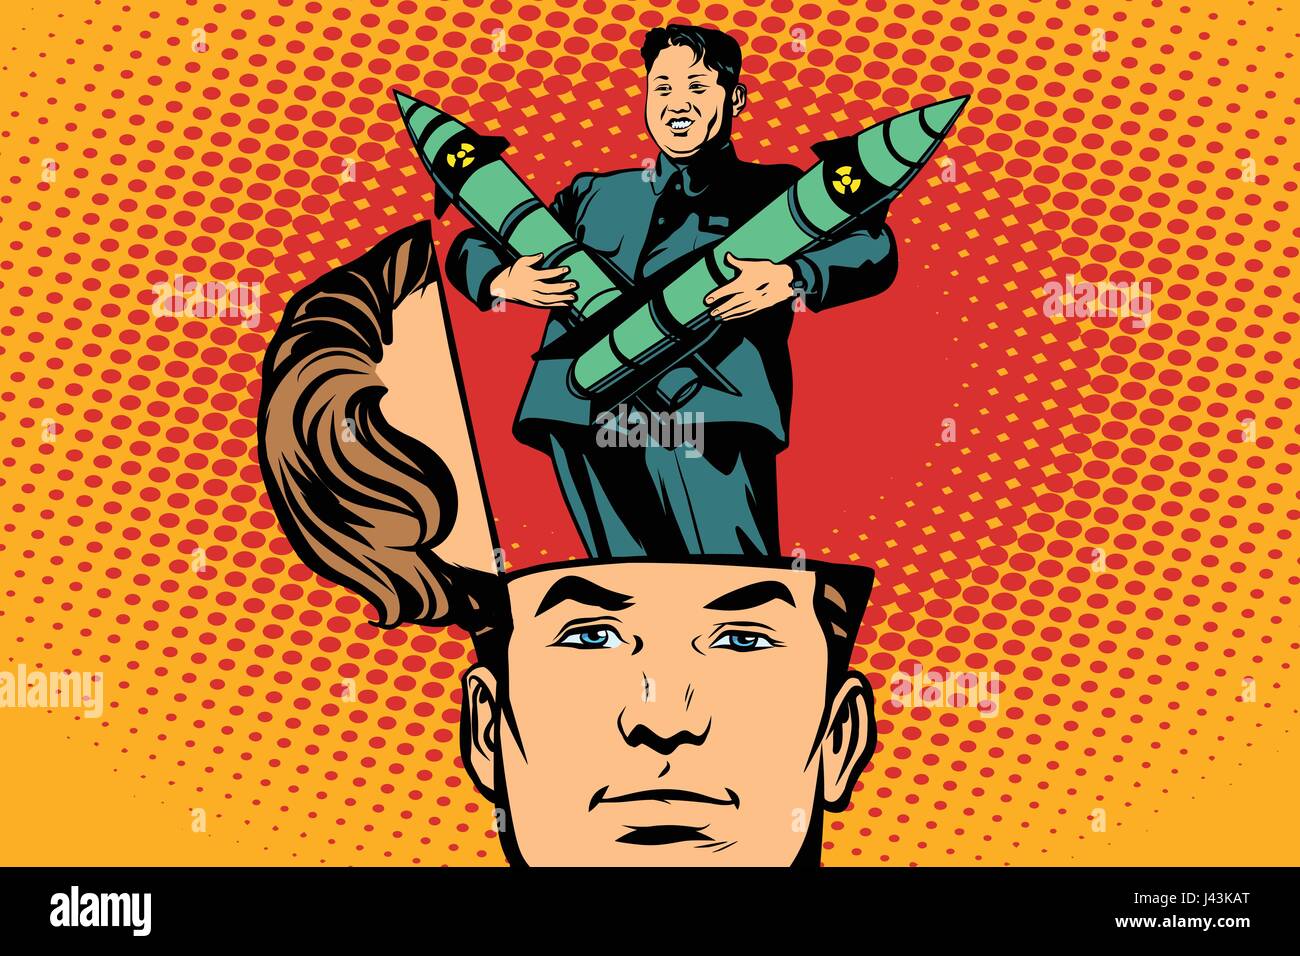 Mann mit einem offenen Kopf Kim Jong UN der Führer der Demokratischen Volksrepublik Korea. Comic-Cartoon-Stil-Pop-Art-Retro-Farbe-Vektor-illustration Stock Vektor